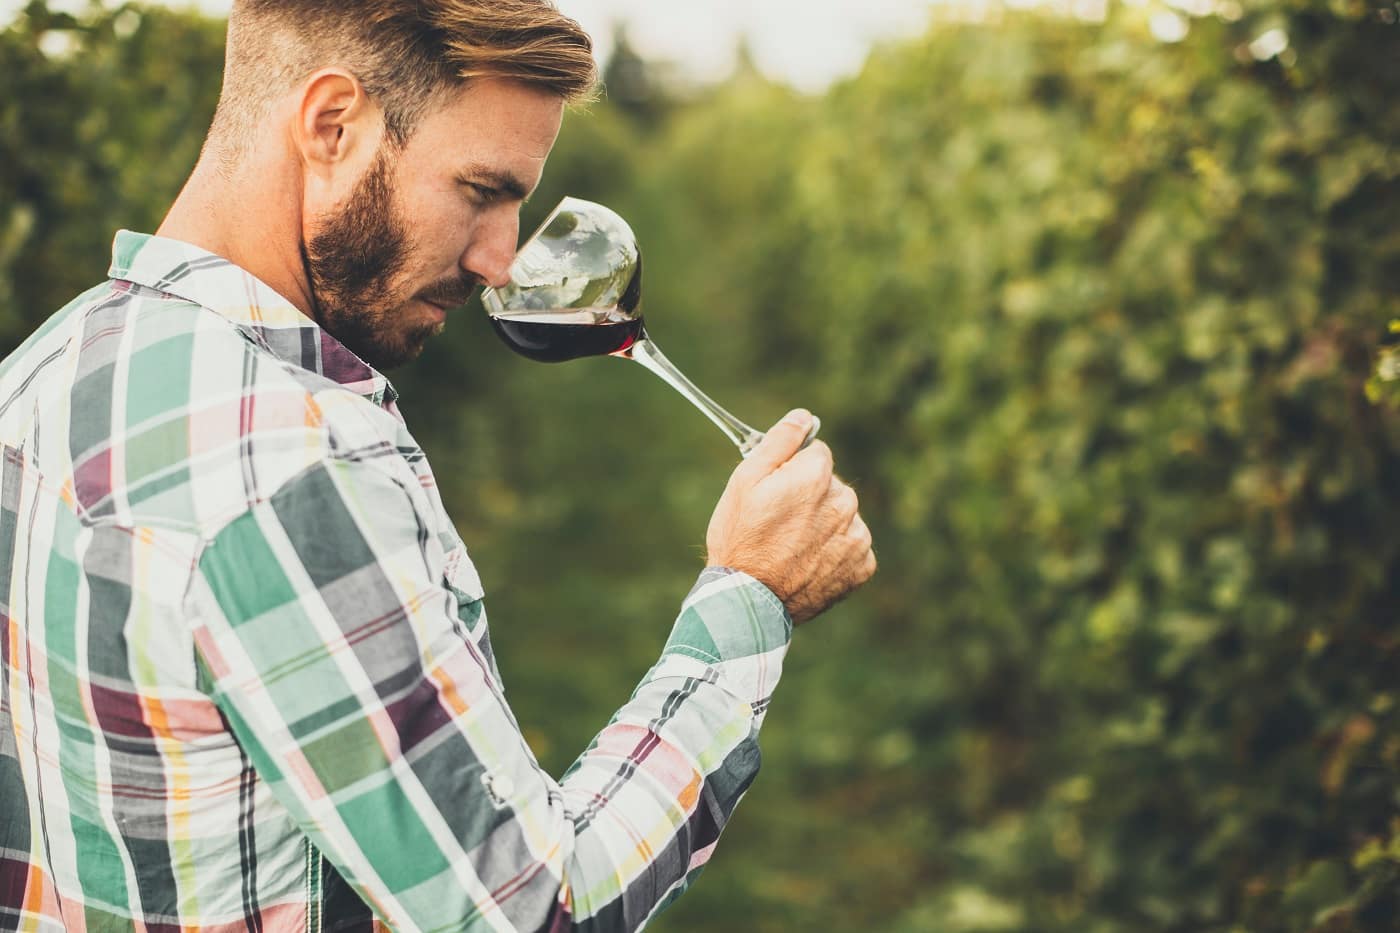 Cei 5 pași ai unei degustări de vinuri. Cum bei „corect” un pahar de vin și la ce trebuie să fii atent